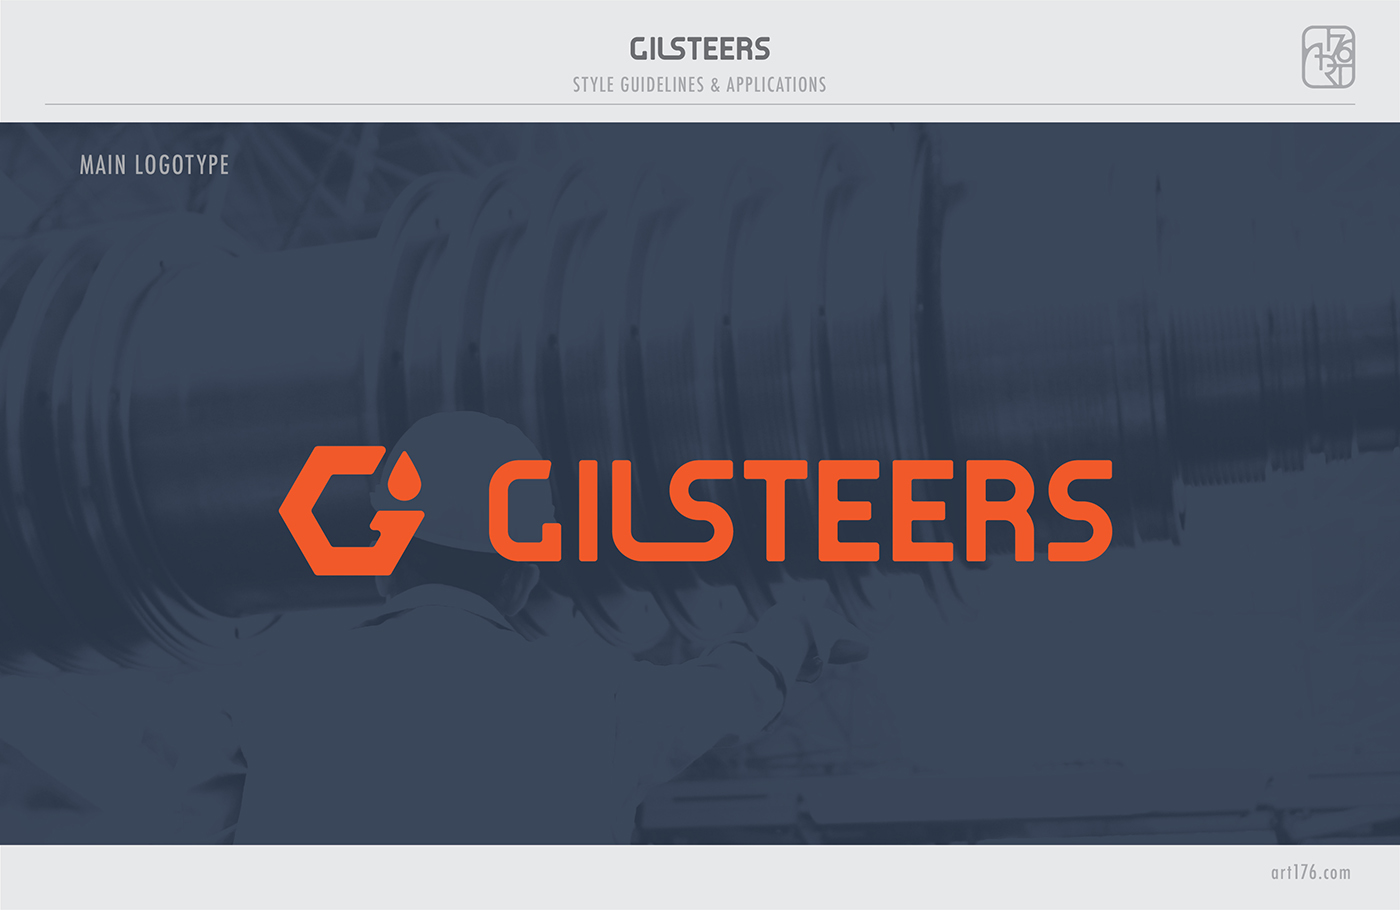 Gilsteers